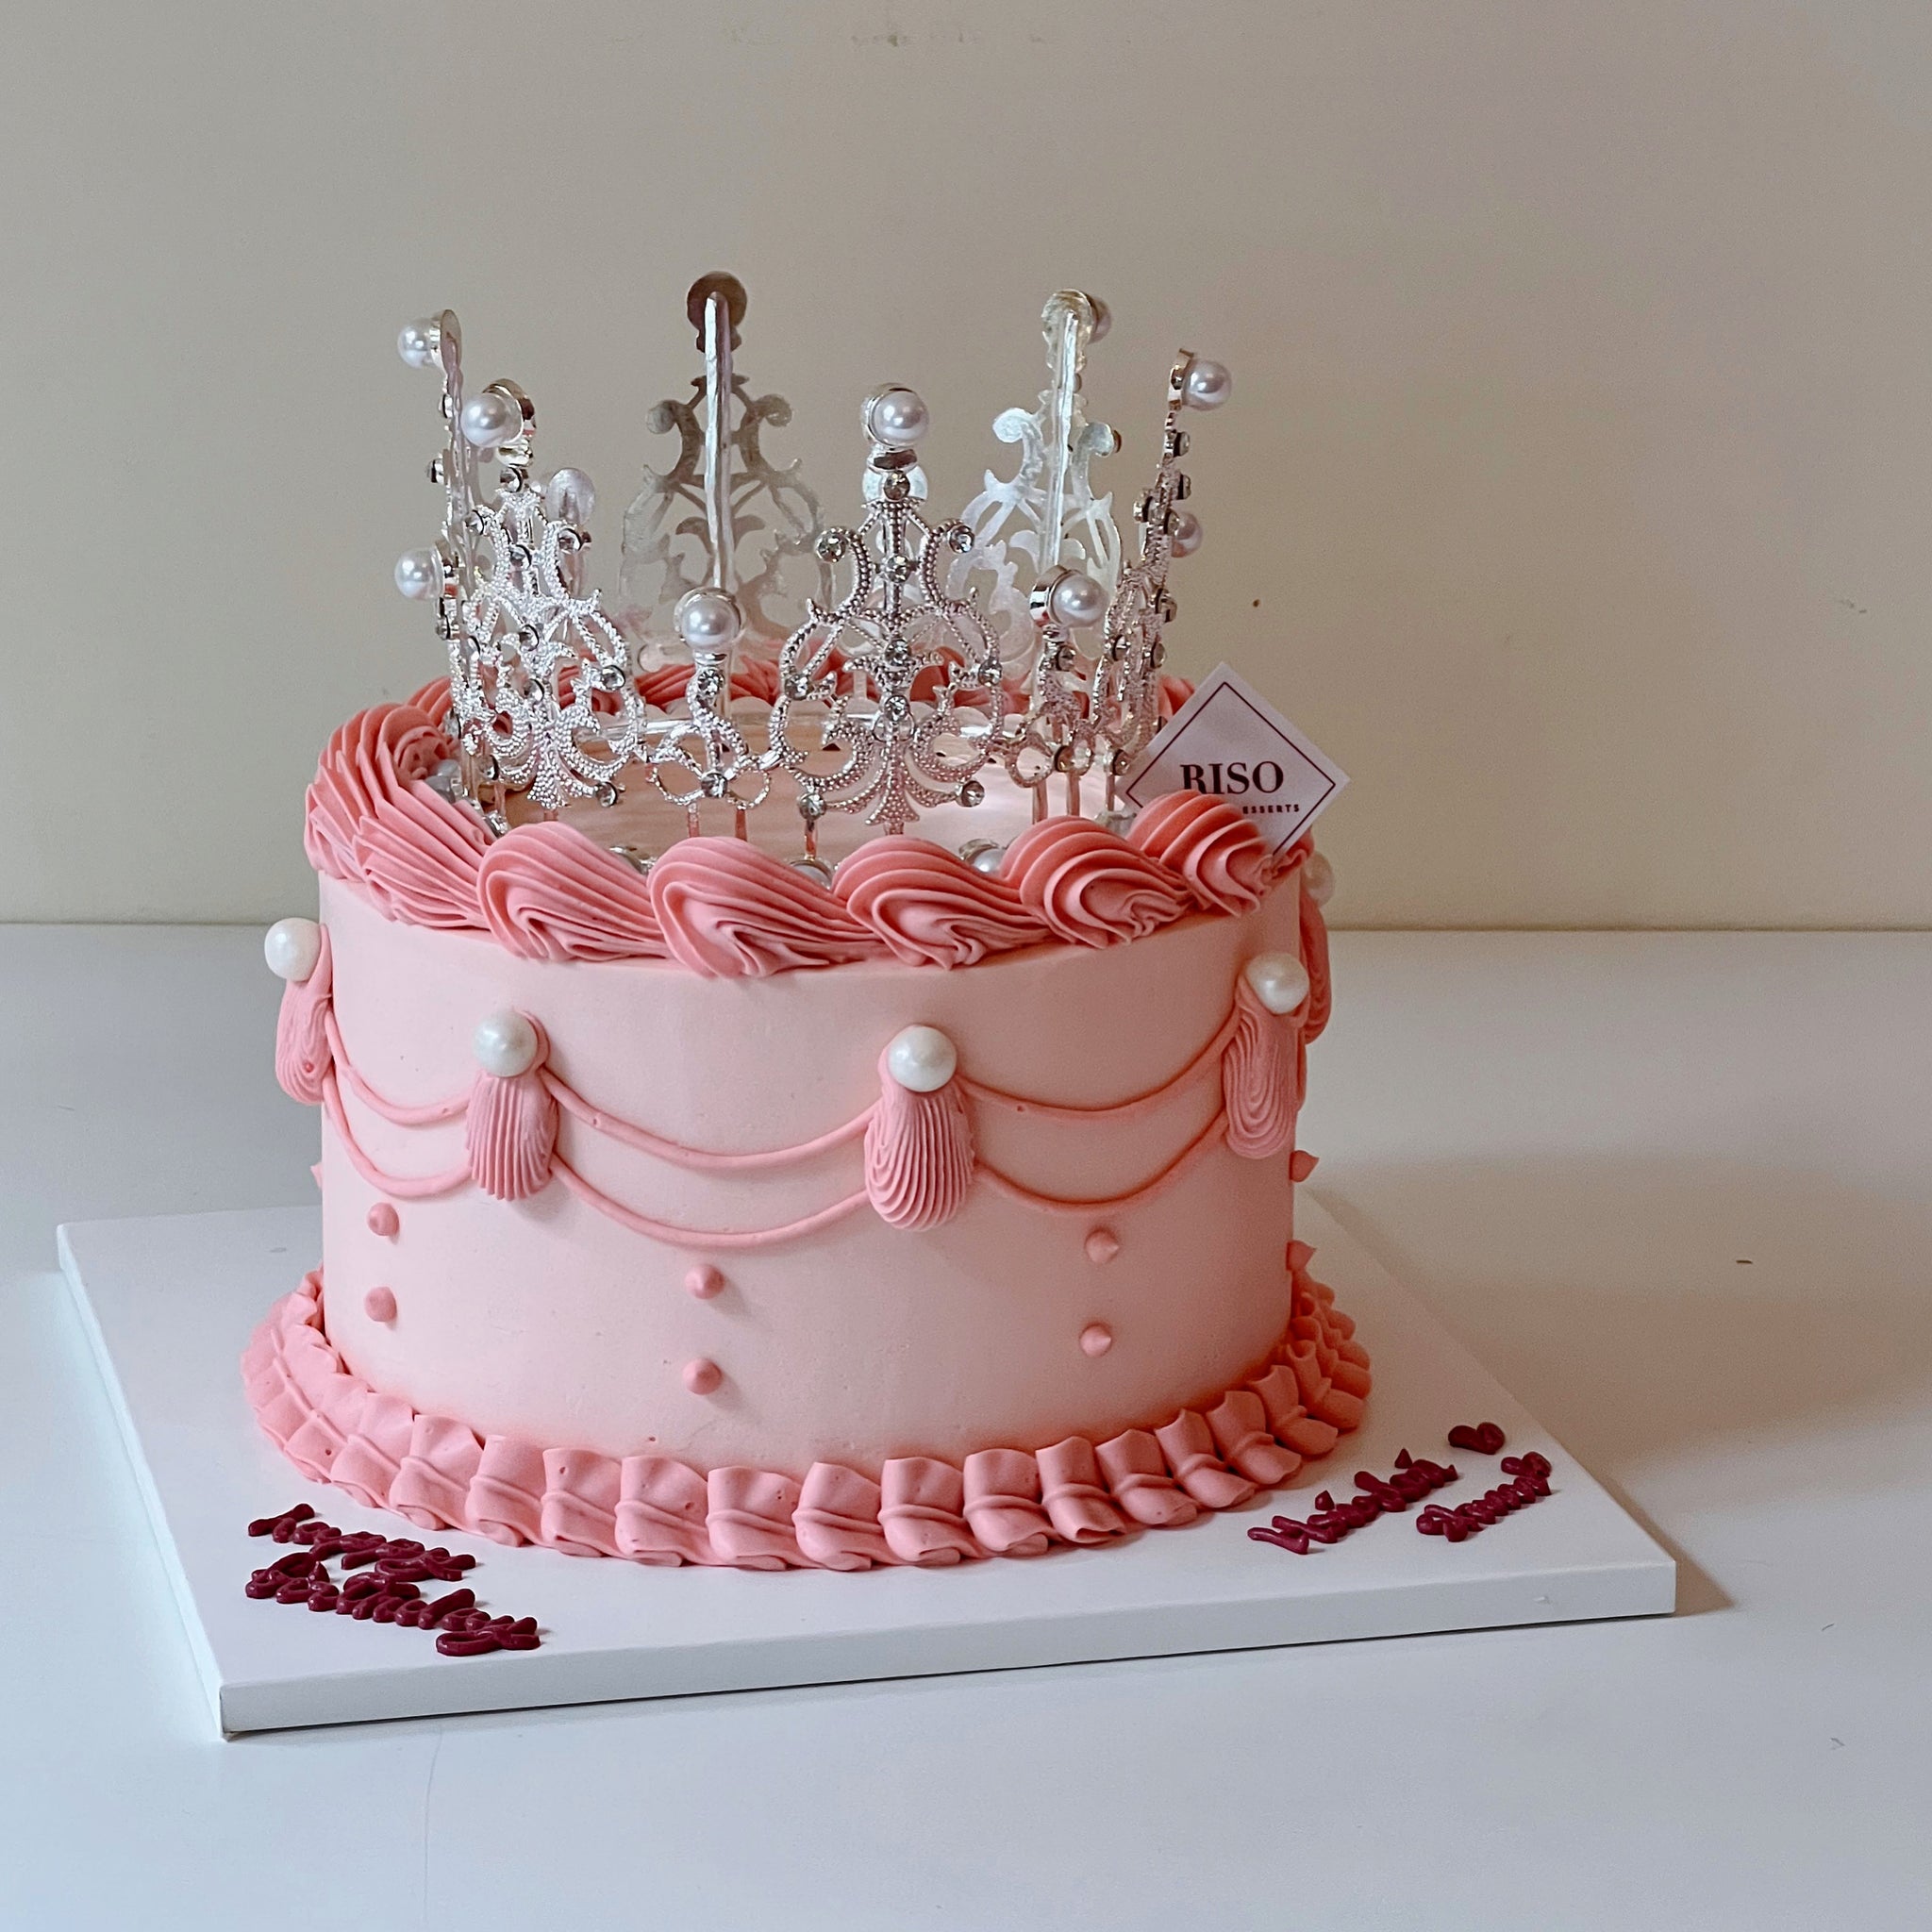 Tiara Birthday Cake Topper | Birthday Party decor for Girls